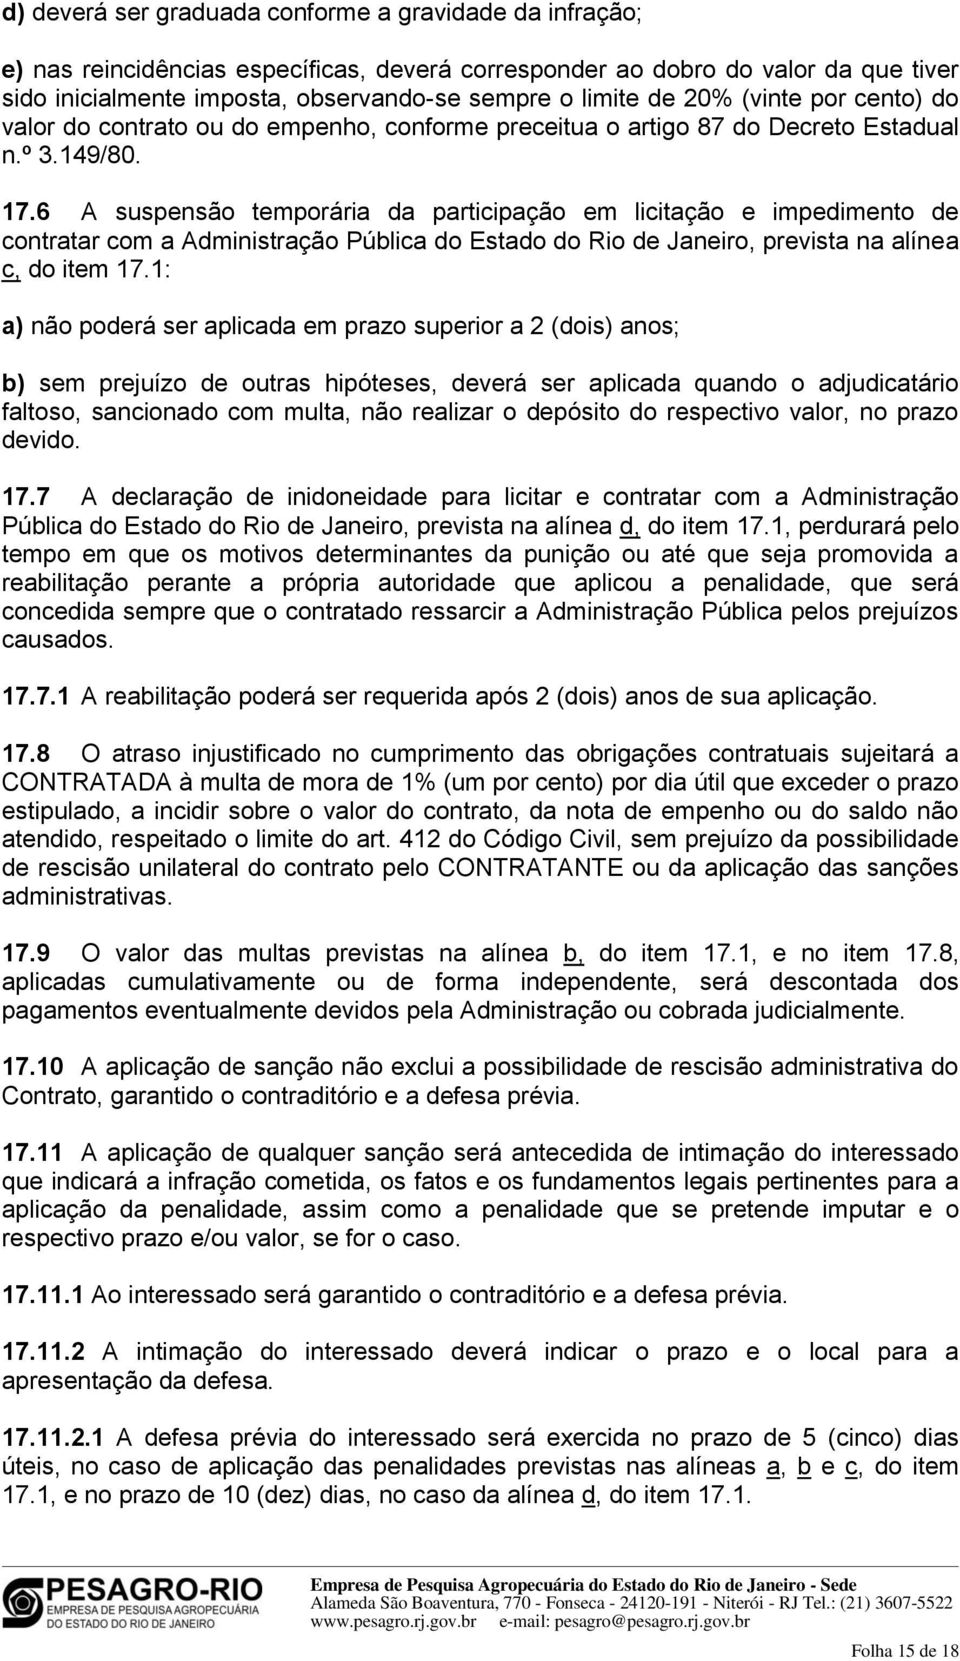 6 A suspensão temporária da participação em licitação e impedimento de contratar com a Administração Pública do Estado do Rio de Janeiro, prevista na alínea c, do item 17.